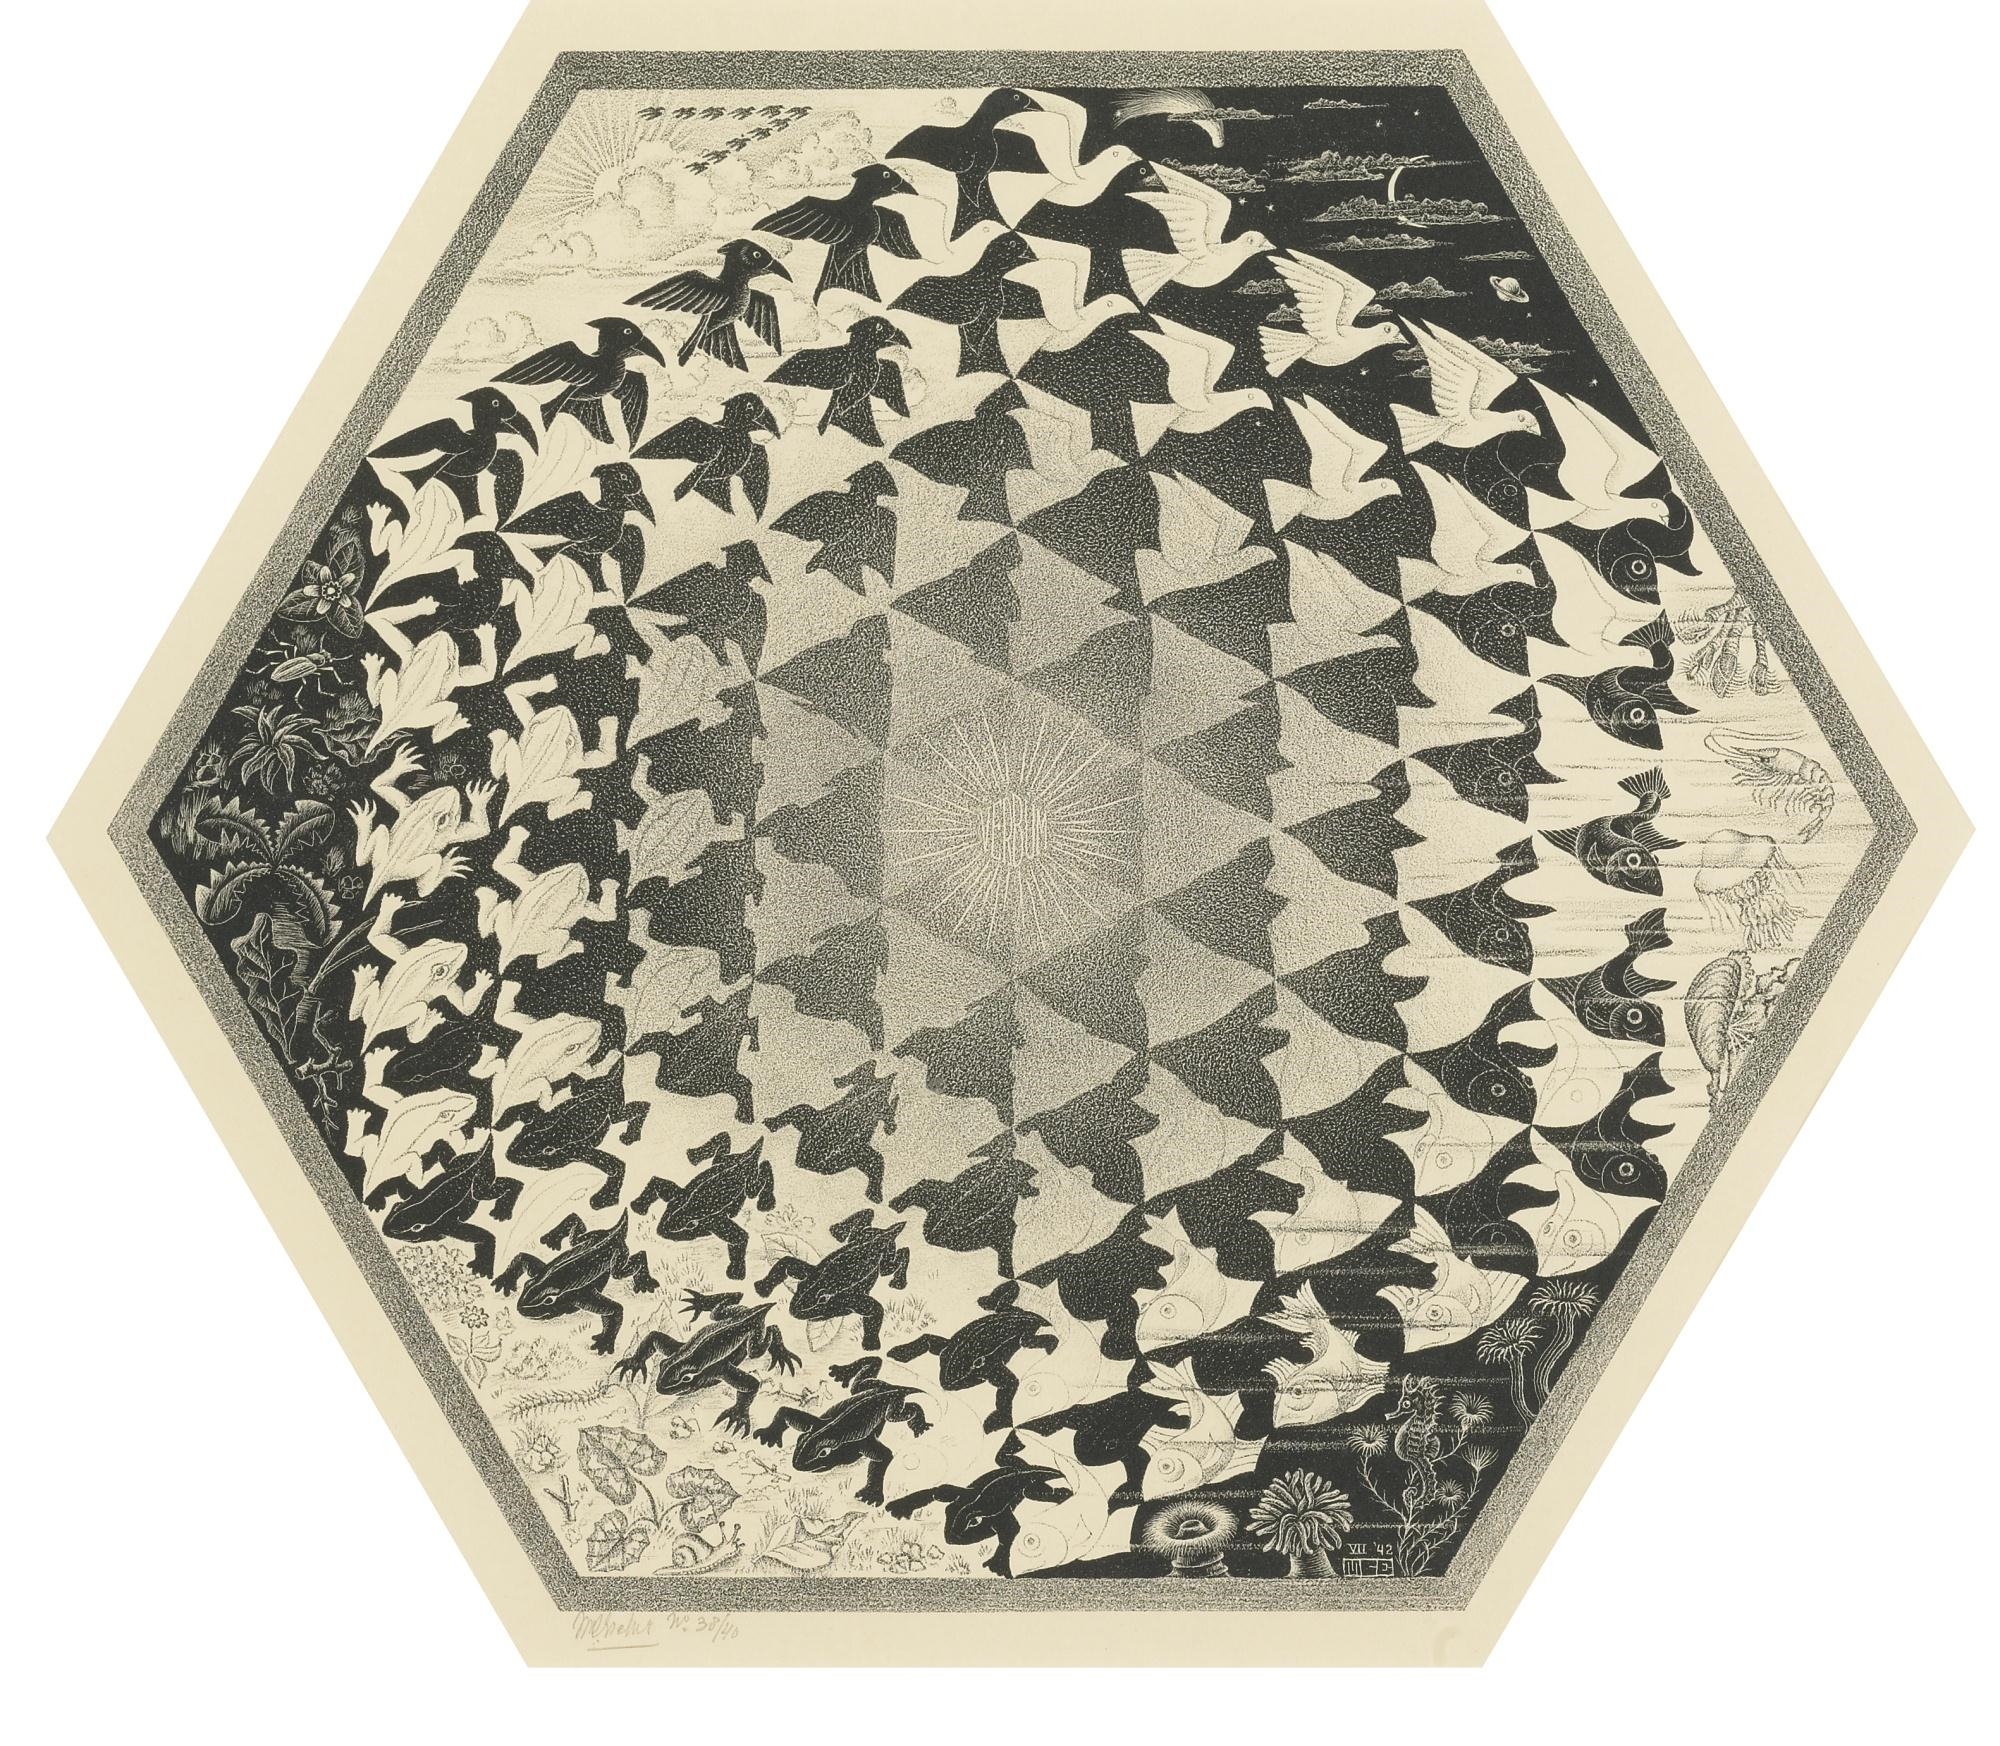 Verbum by Maurits Cornelis Escher, circa 1942